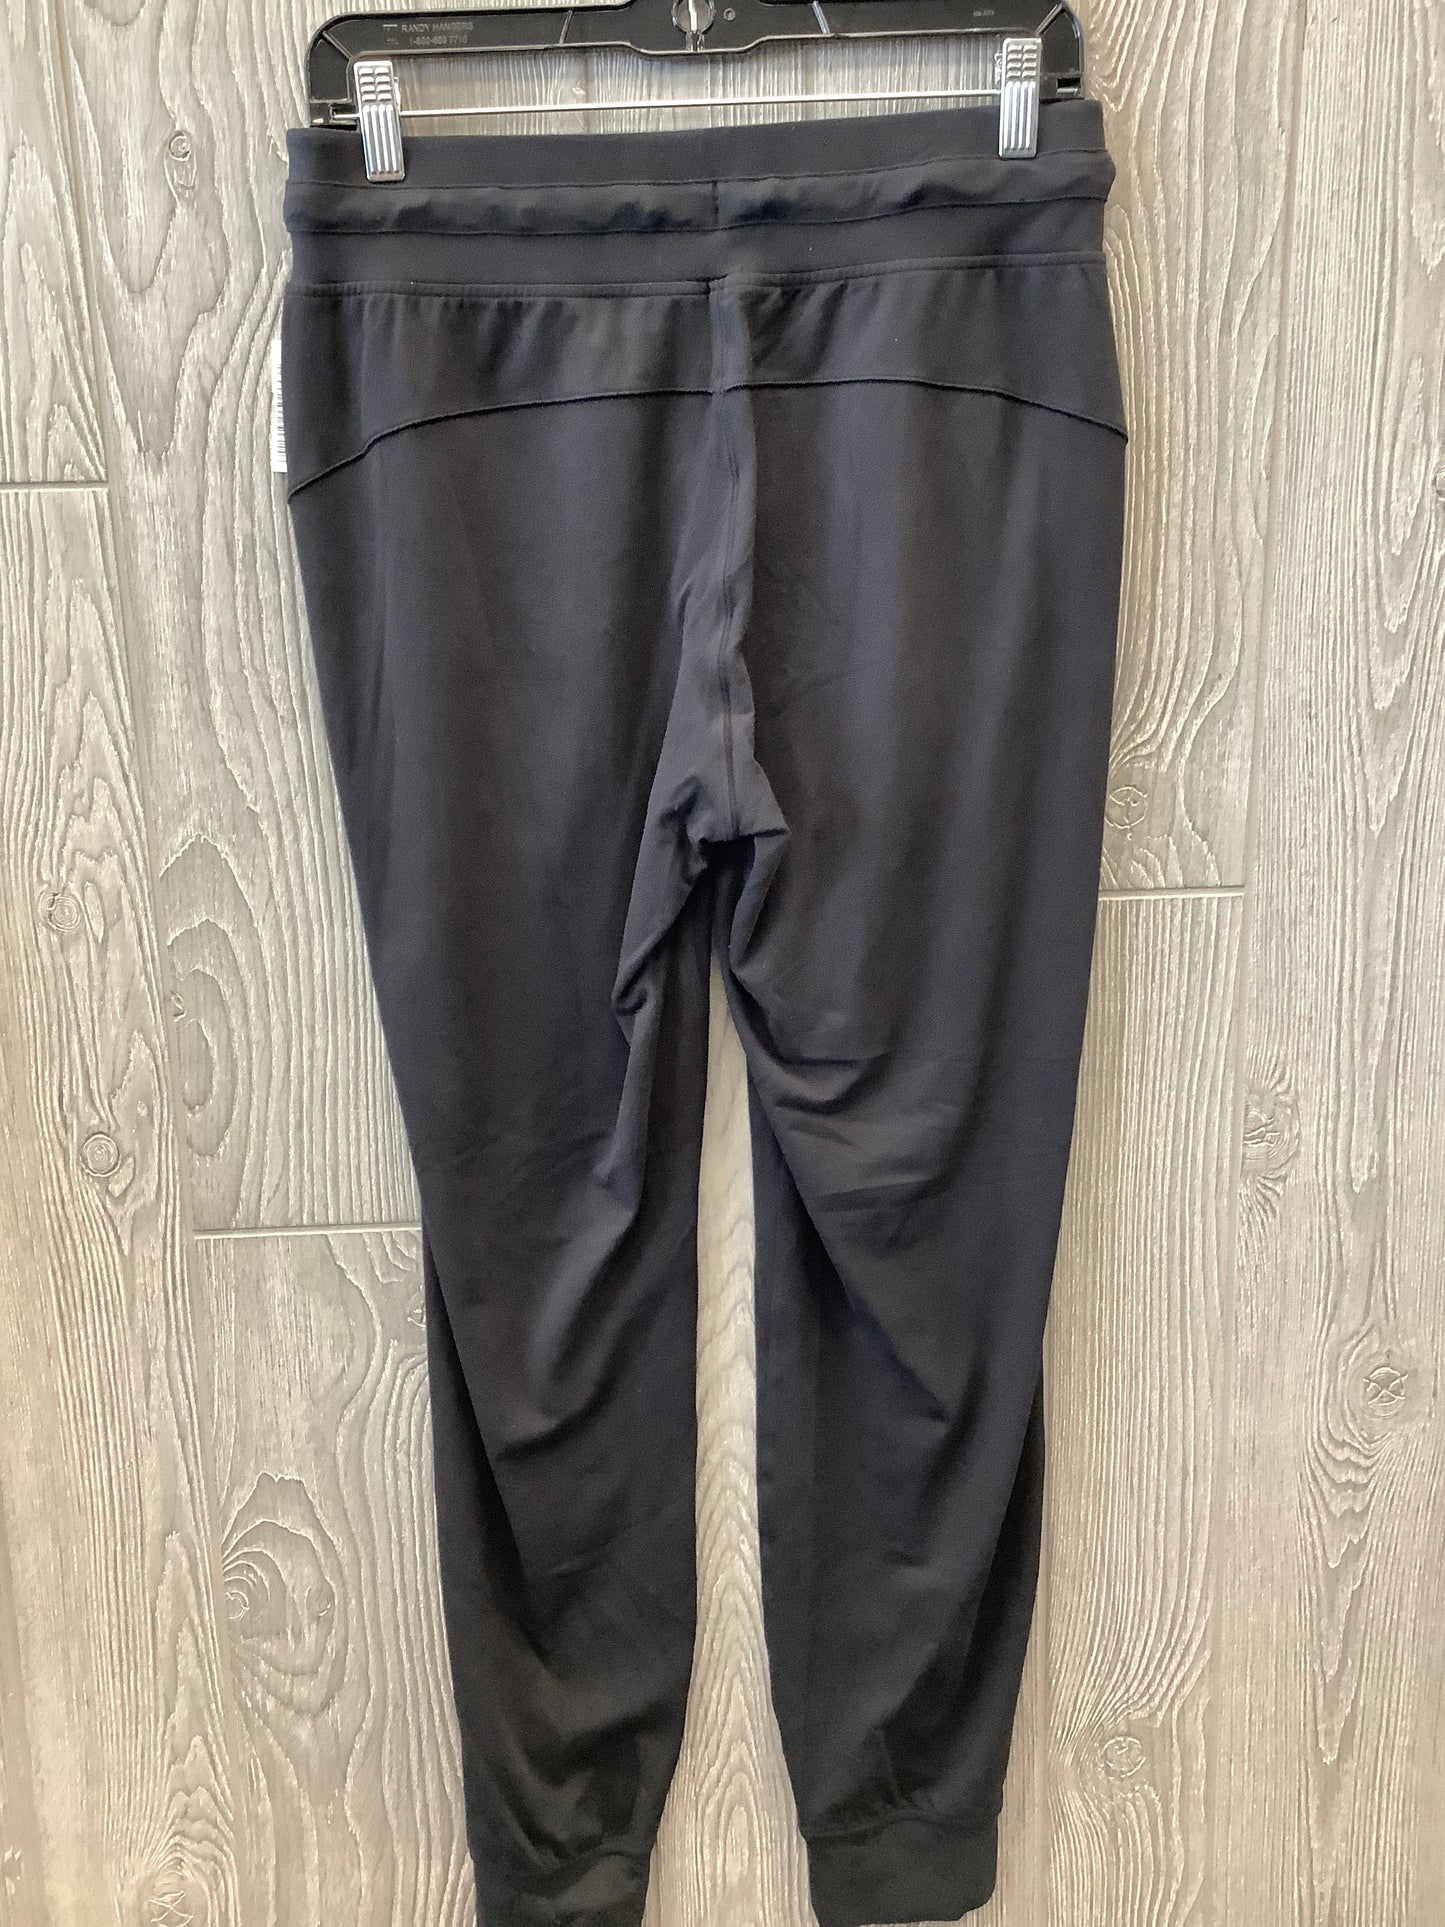 Black Athletic Pants Lululemon, Size 8